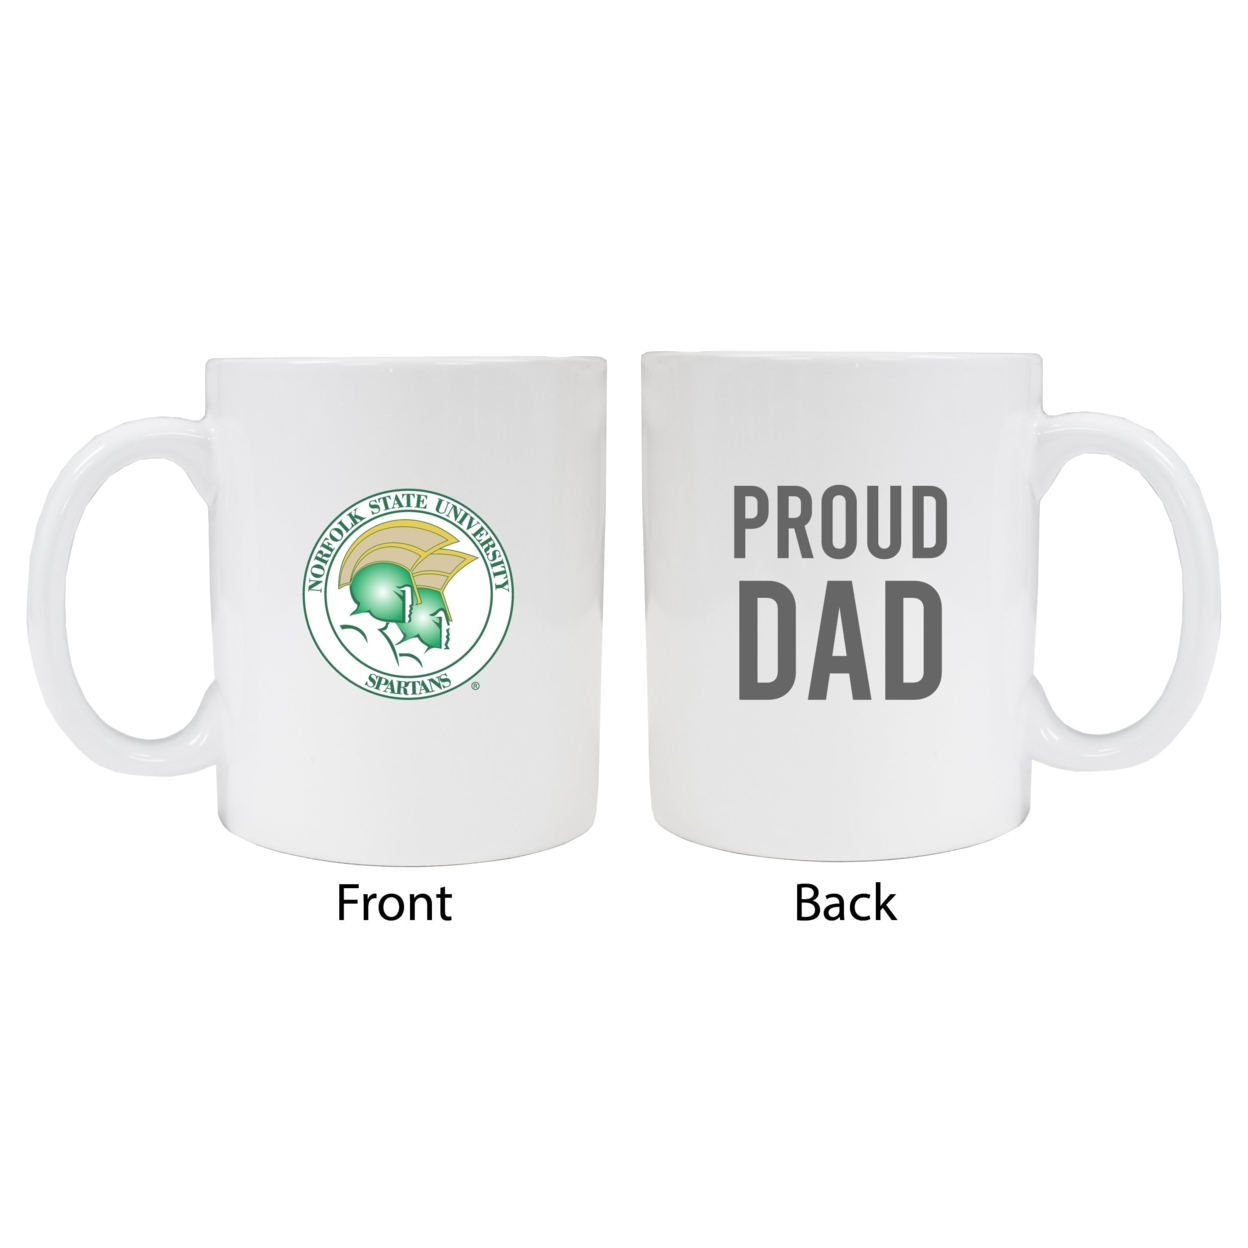 Norfolk State University Proud Dad Ceramic Coffee Mug - White (2 Pack)